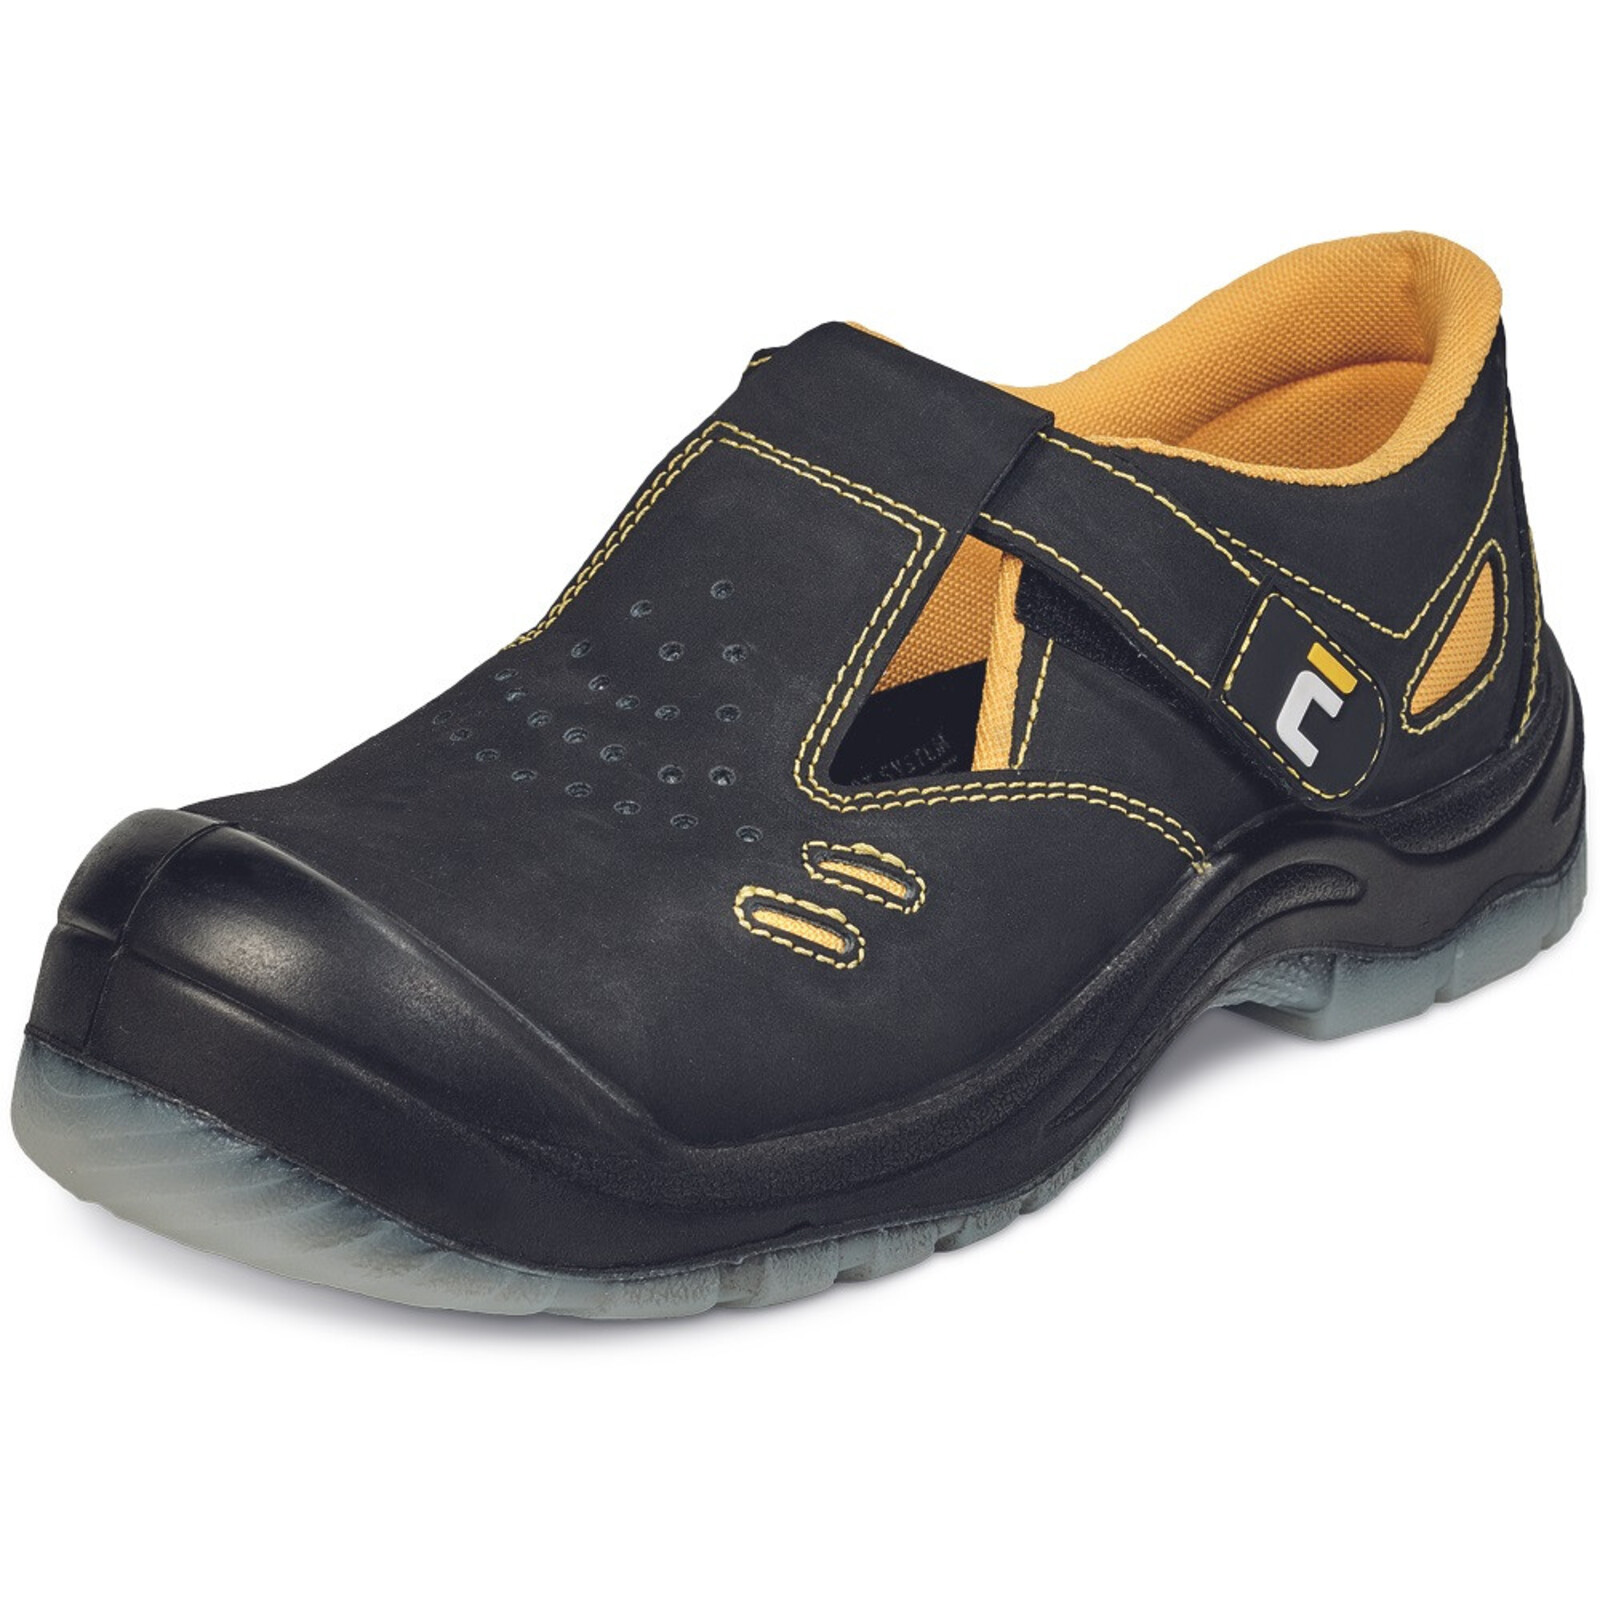 Bezpečnostné sandále Cerva BK TPU MF S1P SRC - veľkosť: 40, farba: čierna/žltá